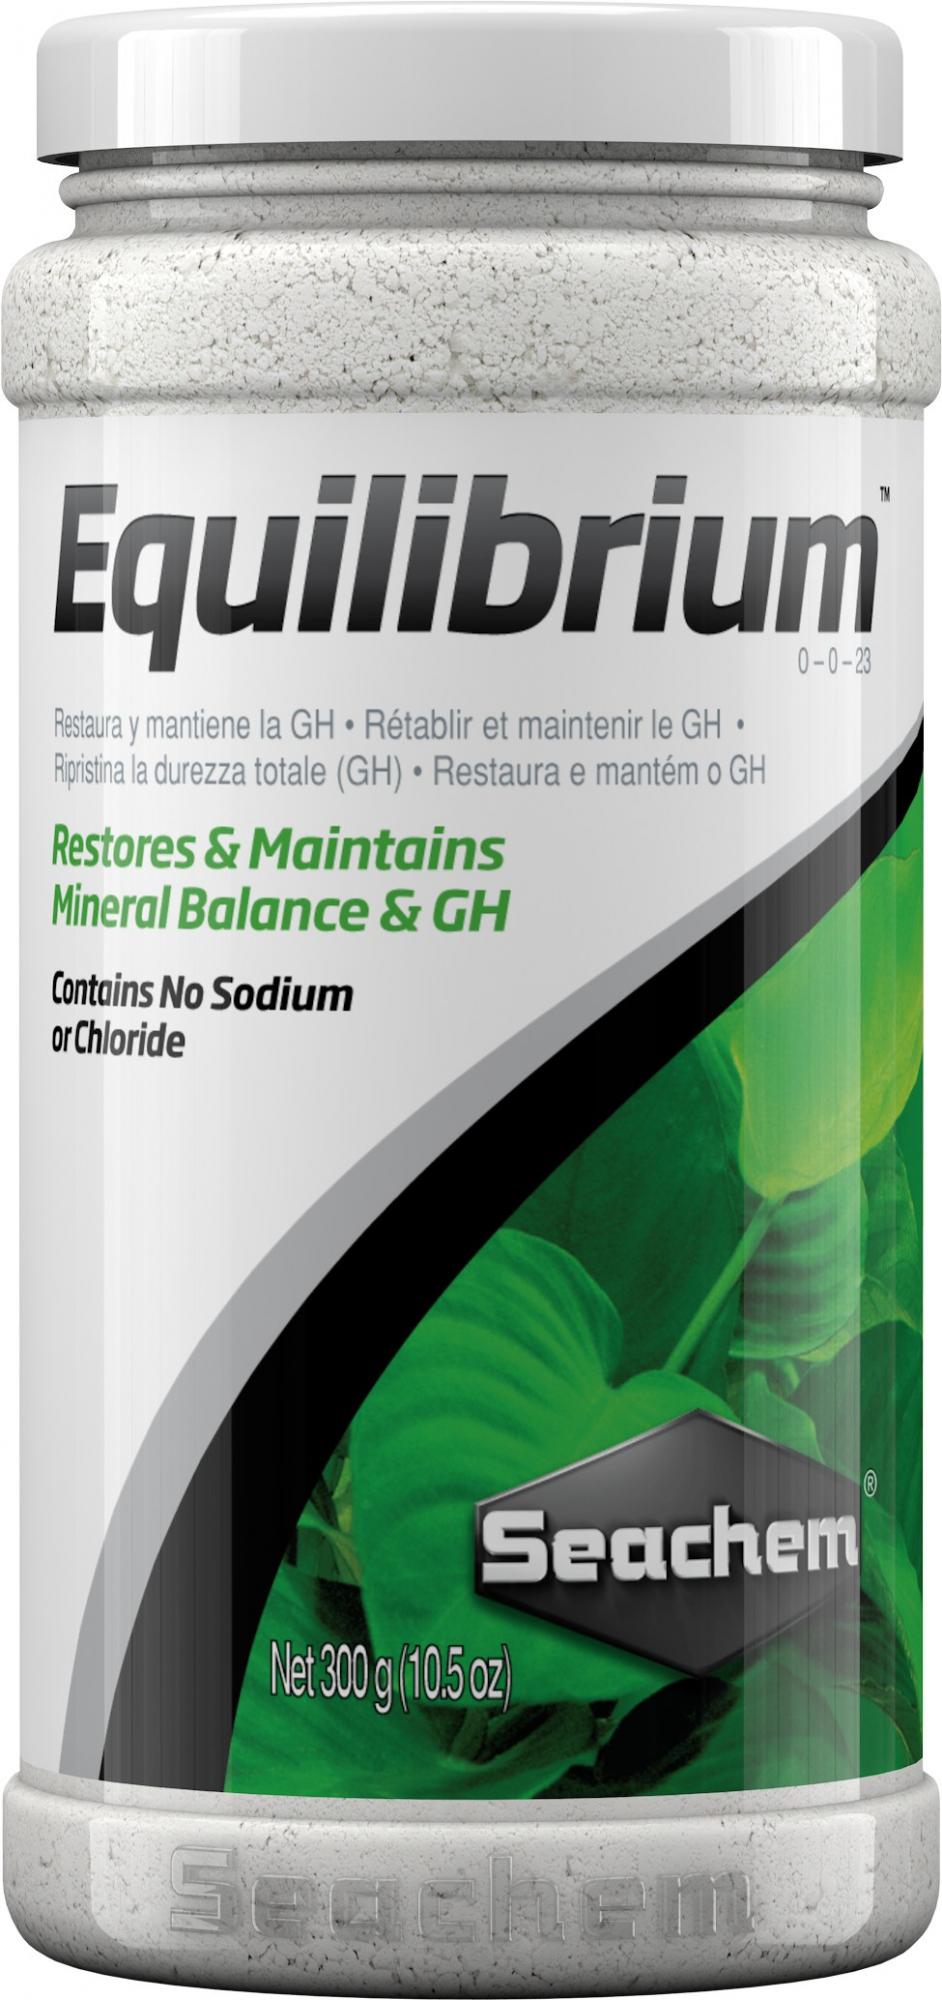 Seachem Equilibrium Bewahrt das Mineralgleichgewicht in einem bepflanzten Aquarium